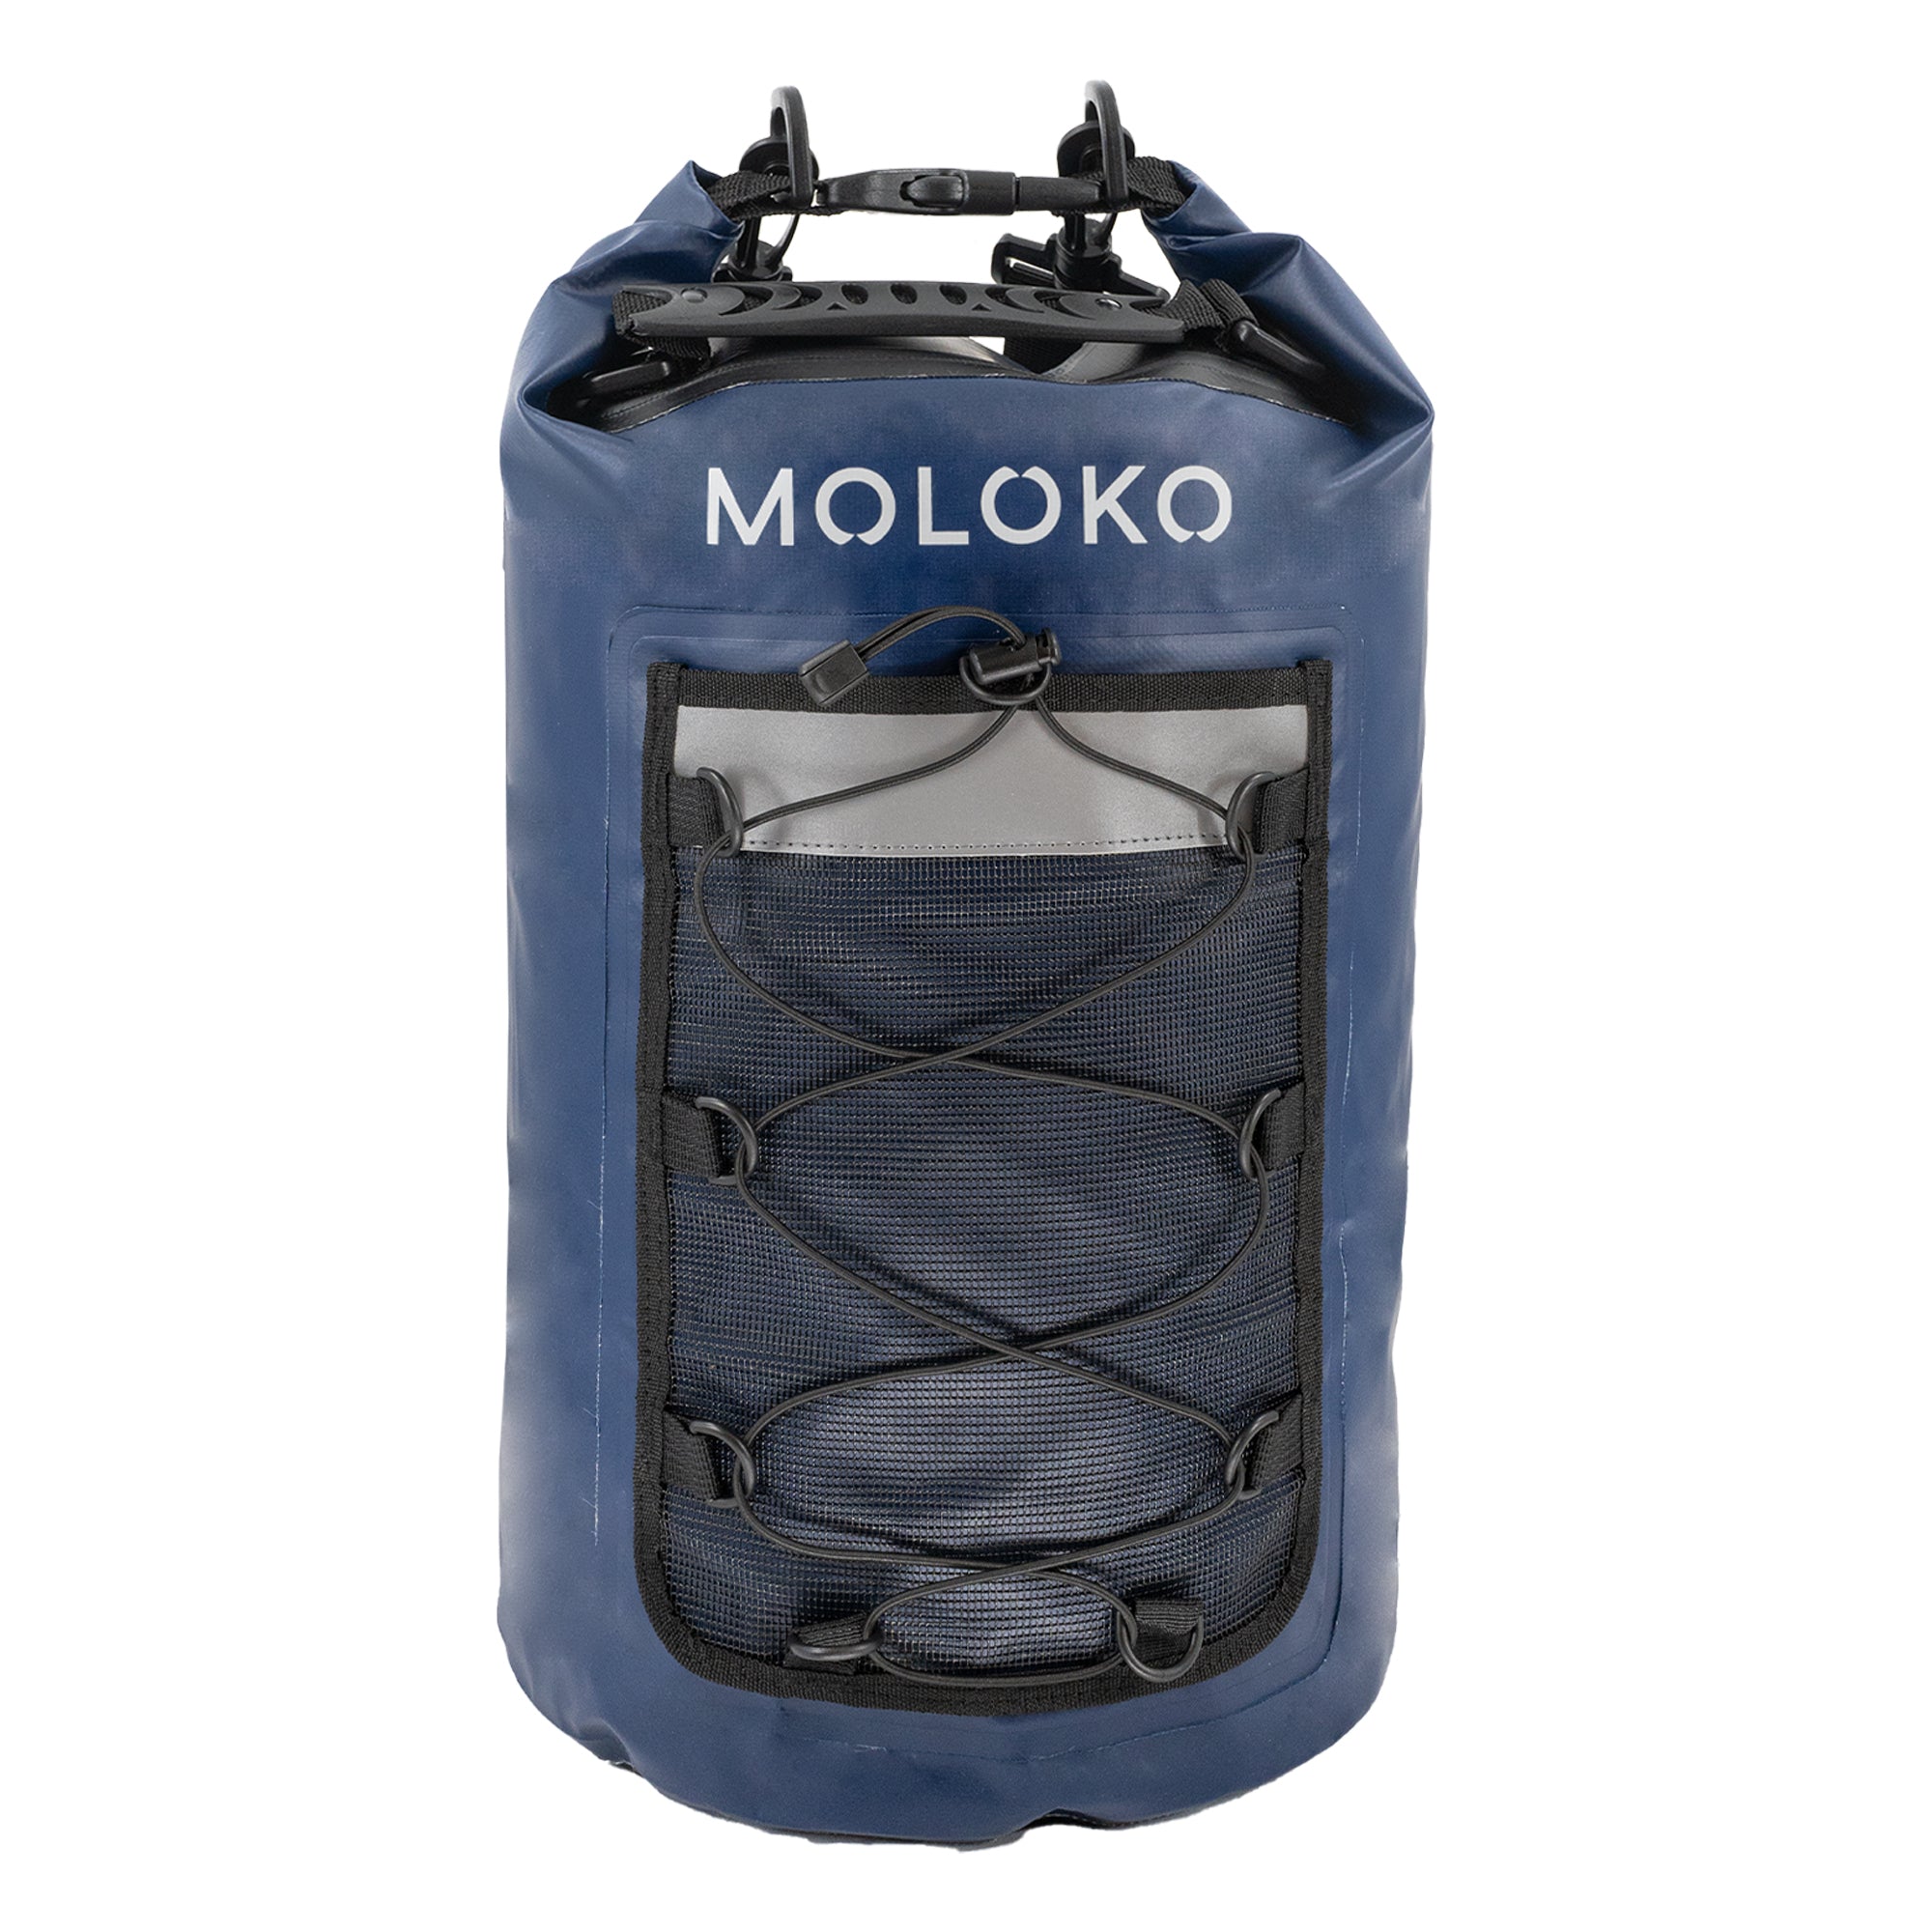 Moloko Pro Dry Bag